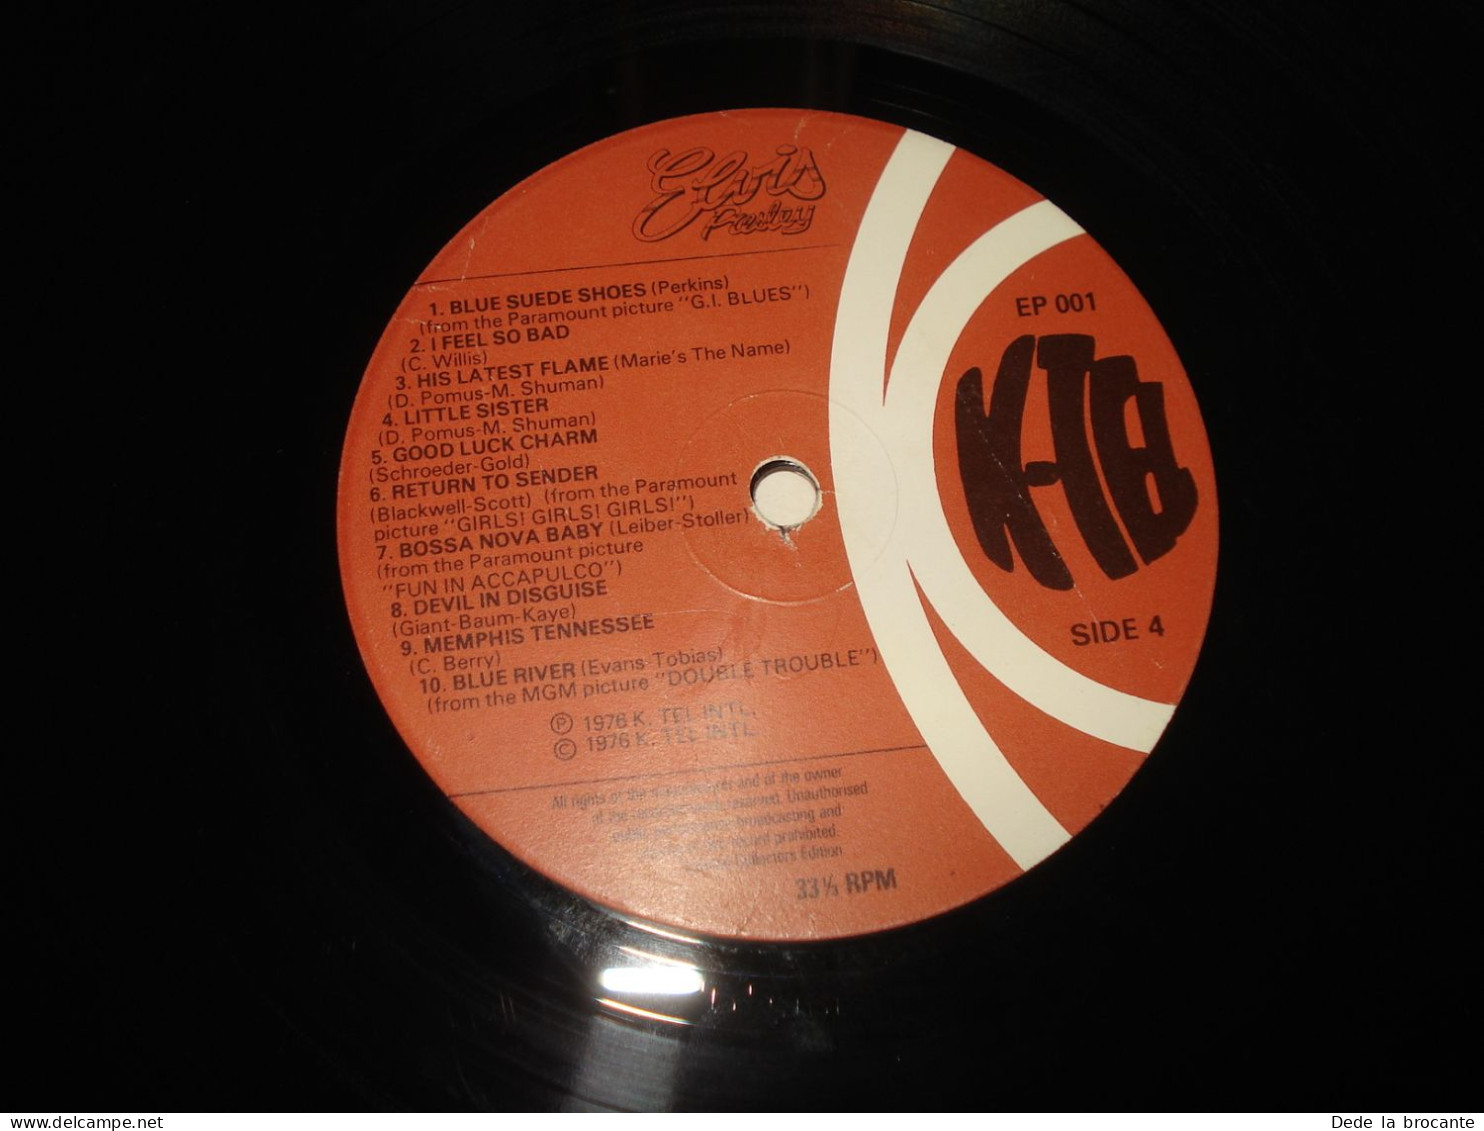 B11 (7)/ Elvis " Le roi du " - Double album - K TEL - EP 001 - Fr 1976 - N.M/N.M